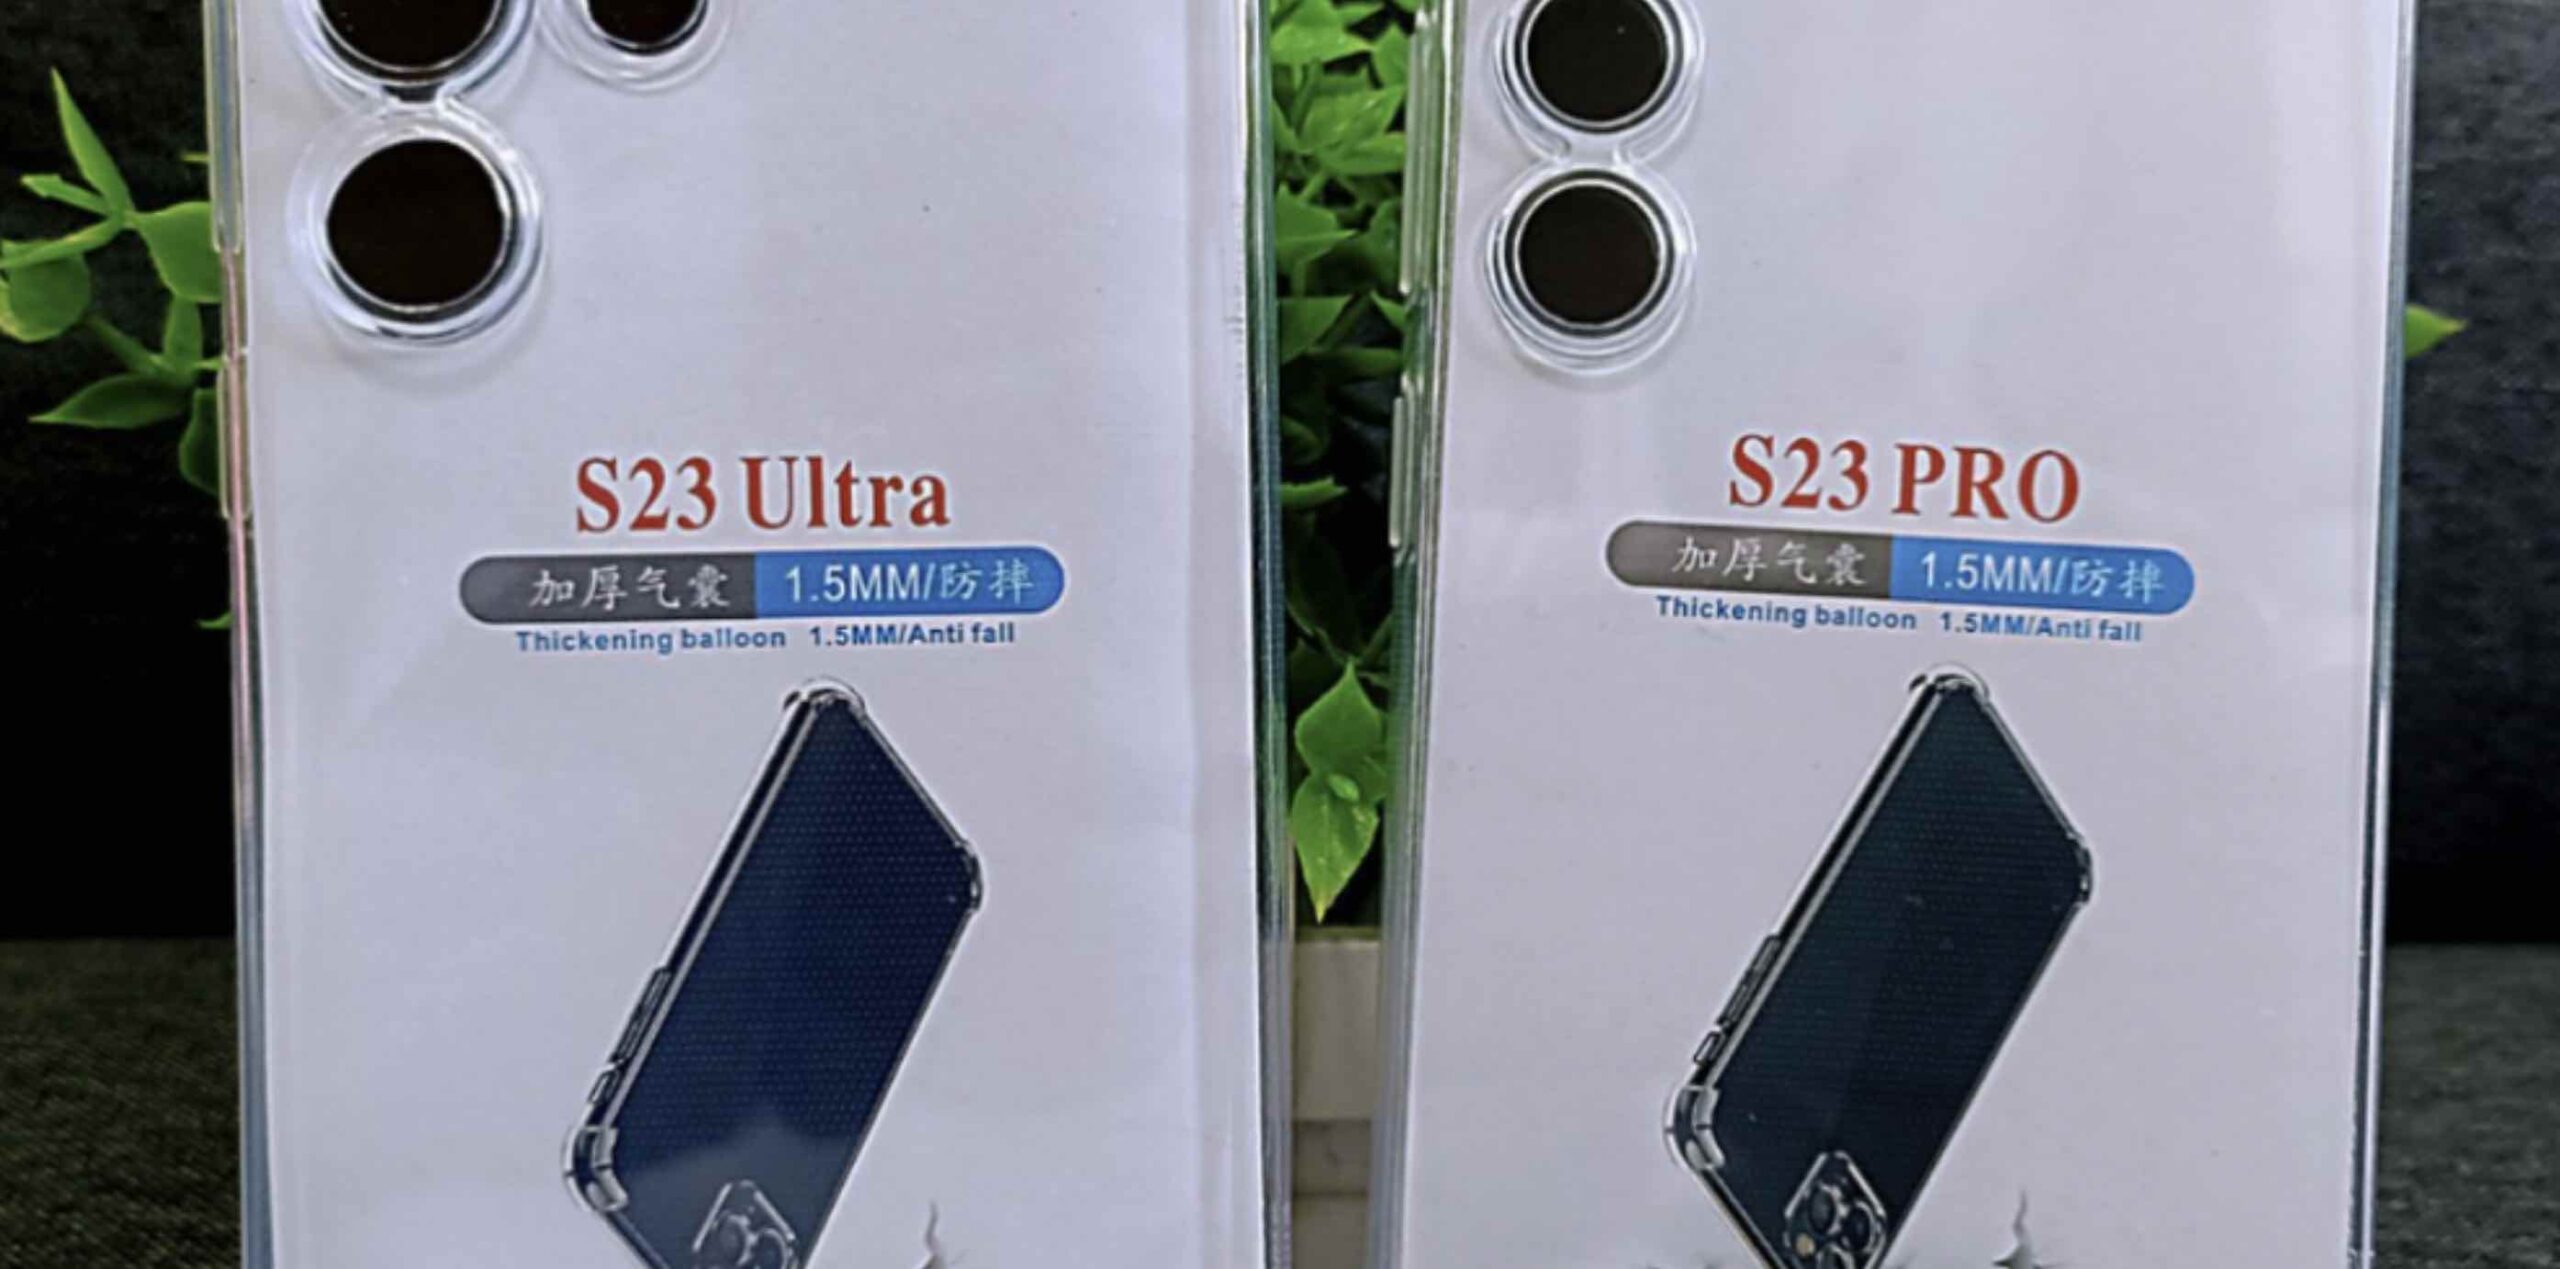 Producent etui pokazał, jak będzie wyglądać cała linia Galaxy S23 ciekawostki samsung Galaxy S23, Galaxy S23  Bloger Ice Universe opublikował zdjęcia etui stworzonych przez jednego z chińskich producentów smartfonów Samsung Galaxy S23, S23 Pro i S23 Ultra. S2 scaled